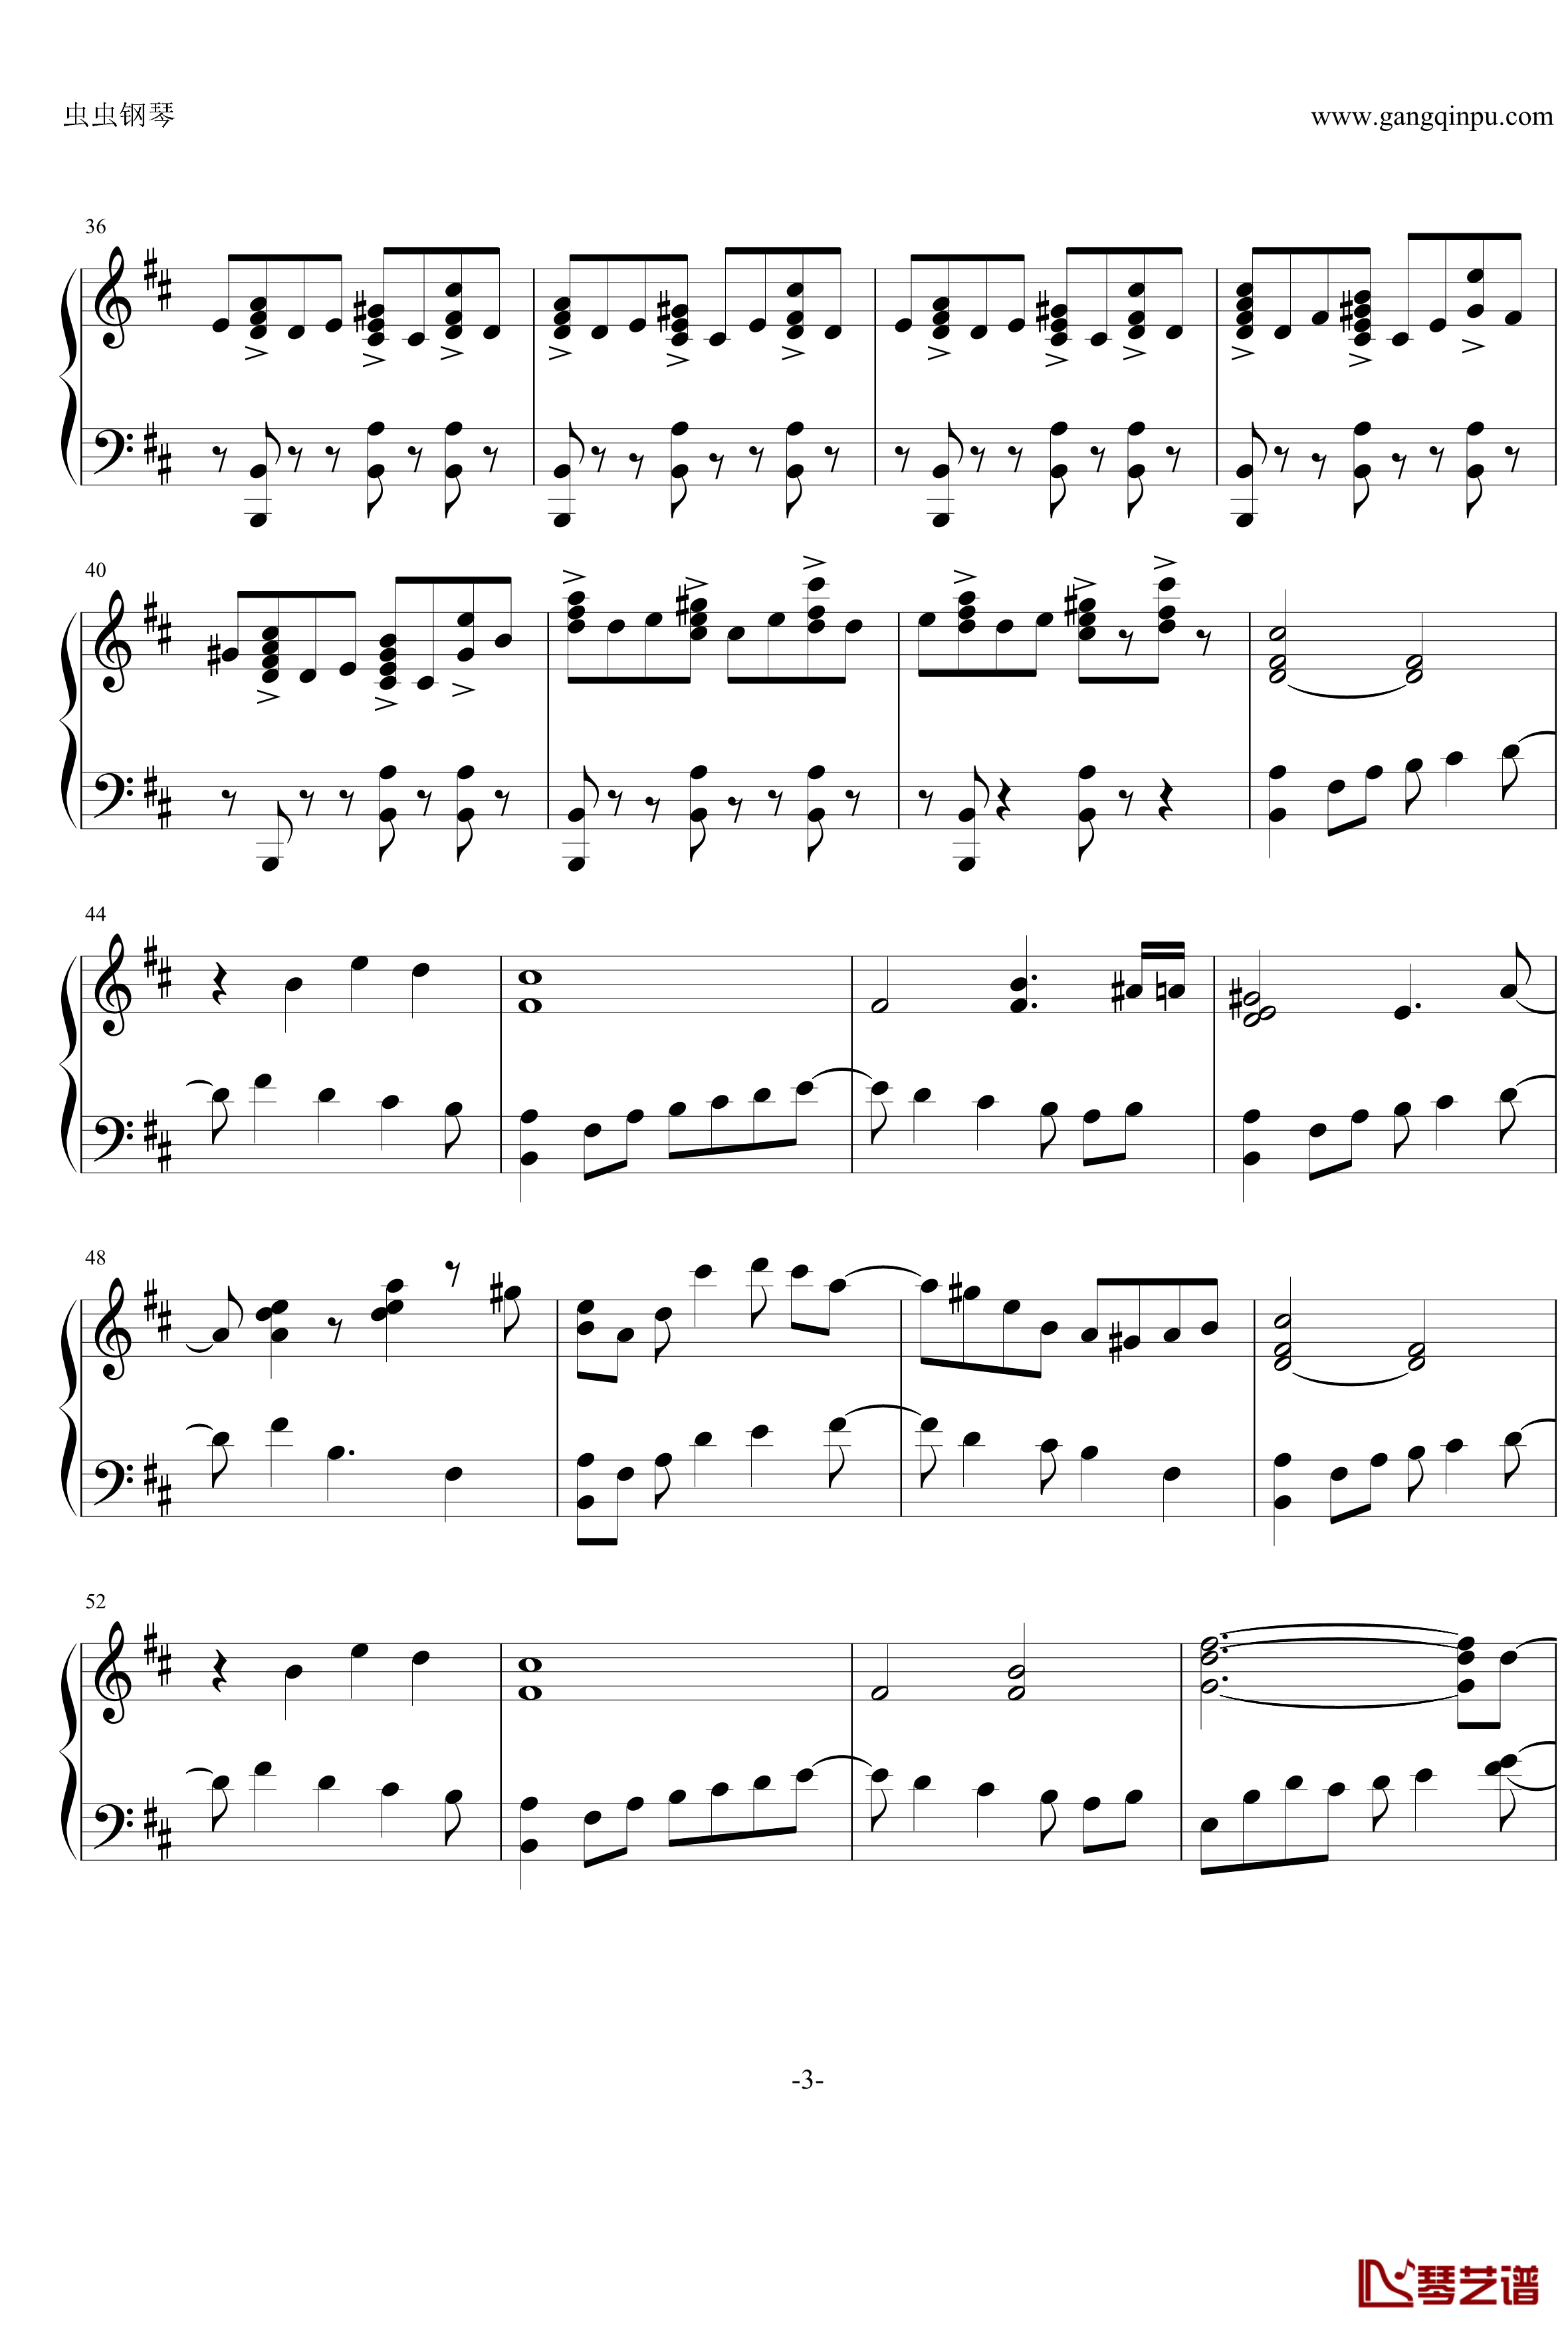 最终幻想13雷霆主题音乐钢琴谱-ライトニングのテーマ 閃光-最终幻想3